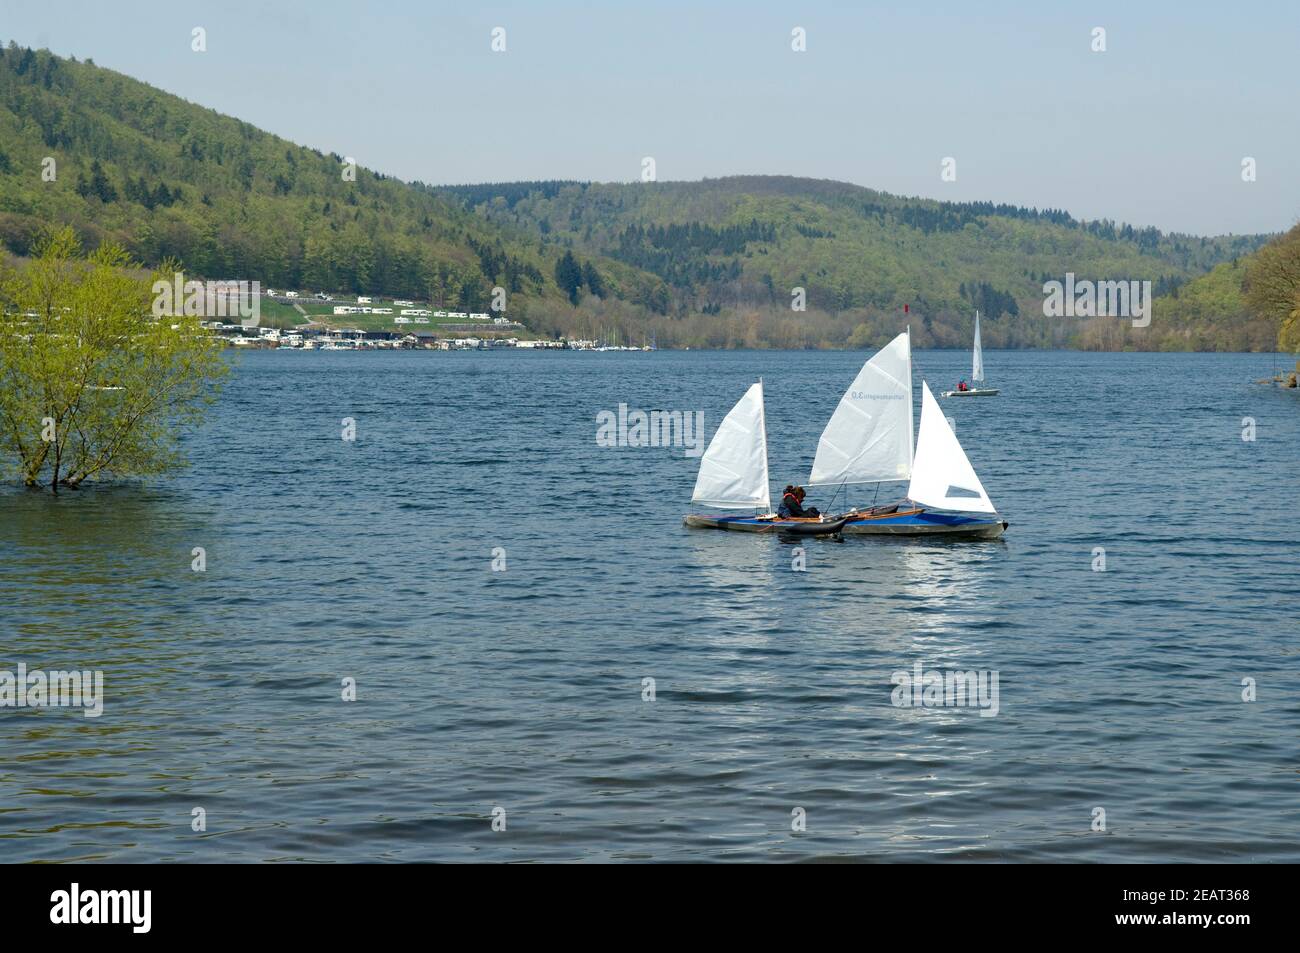 Edersee, Rehbach, Bucht, Segelboote Foto de stock